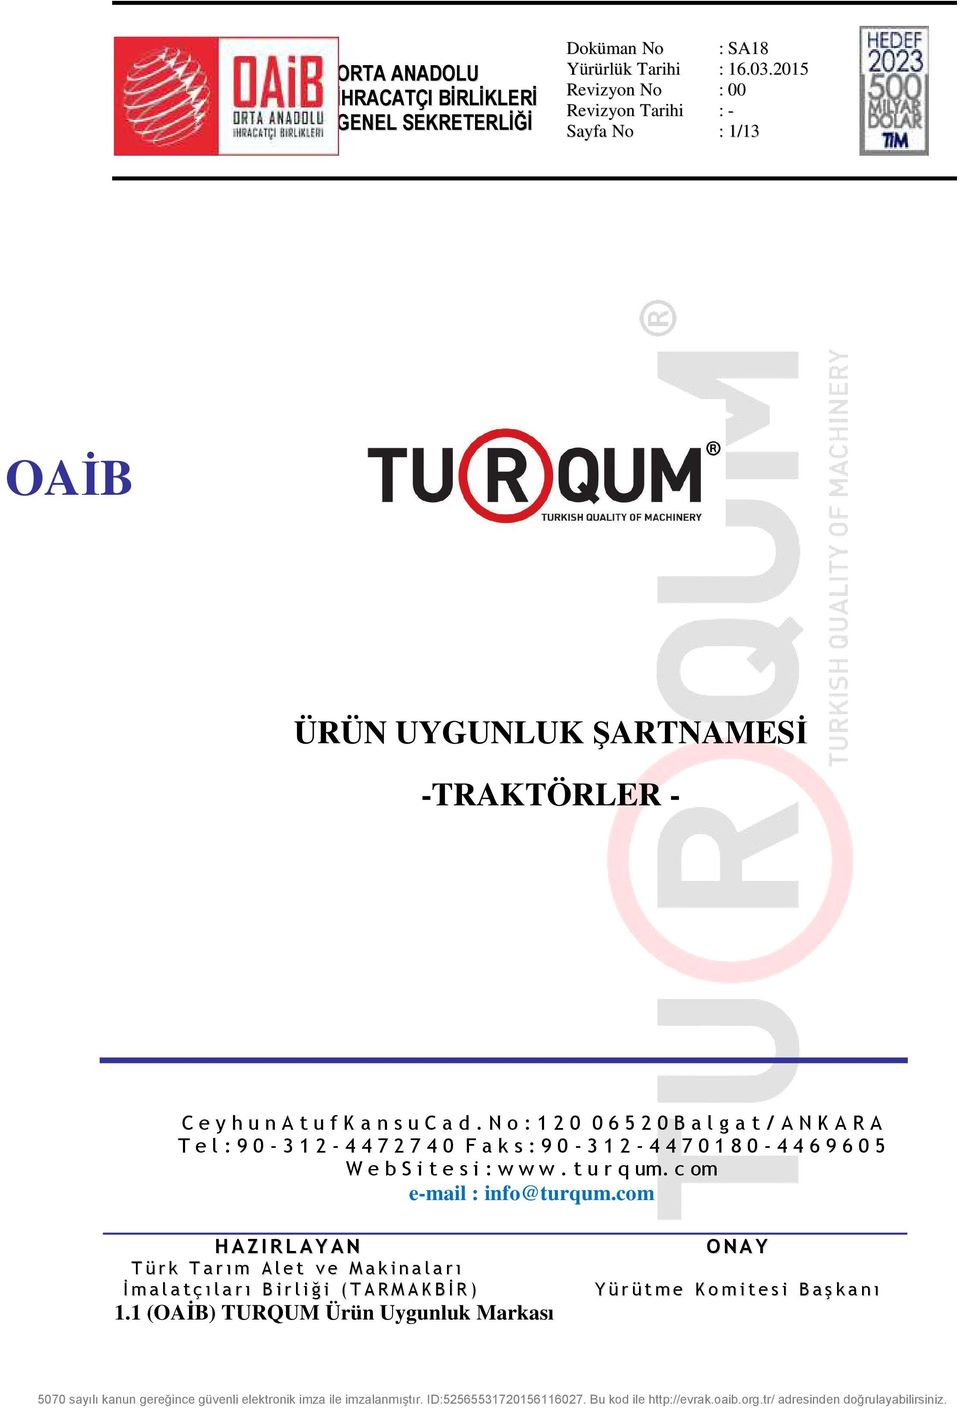 8 0-4 4 6 9 6 0 5 W e b S i t e s i : w w w. t u r q um. c om e-mail : info@turqum.